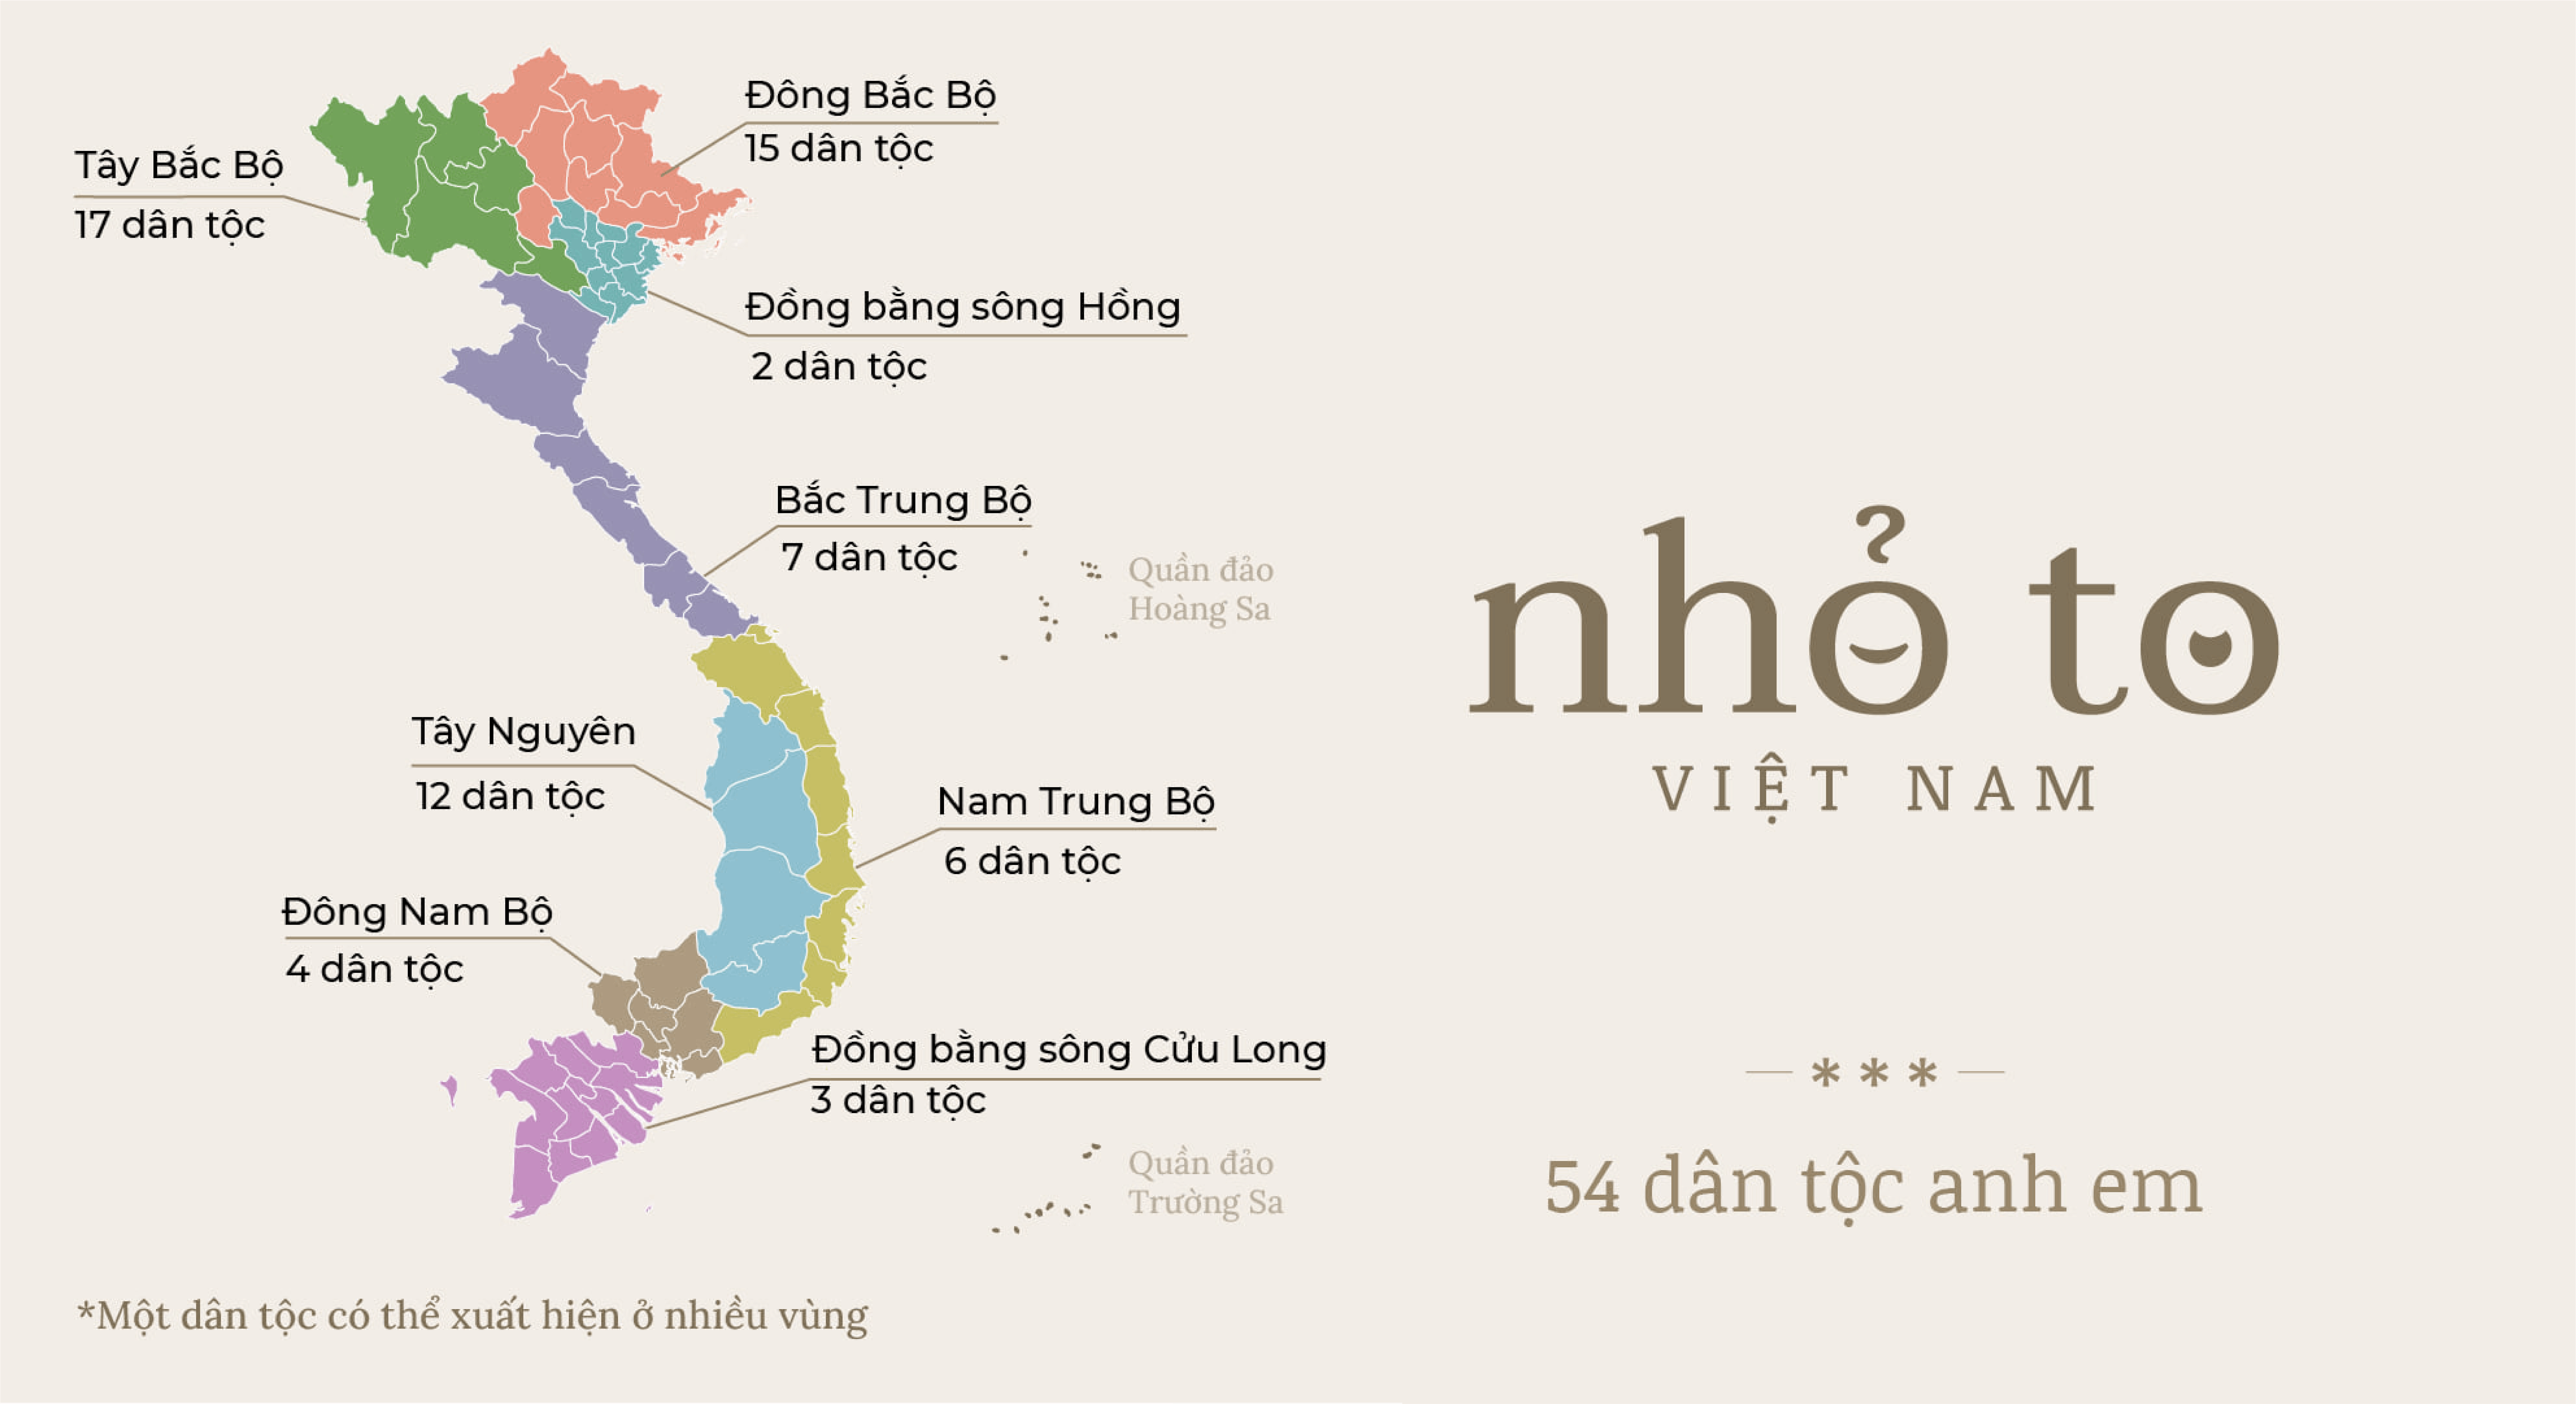 54 dân tộc anh em: Bạn có biết rằng Việt Nam hiện có 54 dân tộc với những nét văn hóa đặc trưng khác nhau? Hình ảnh này sẽ giúp bạn hình dung rõ hơn về những truyền thống và phong tục của mỗi dân tộc. Hãy khám phá sự đa dạng văn hóa của đất nước ta!